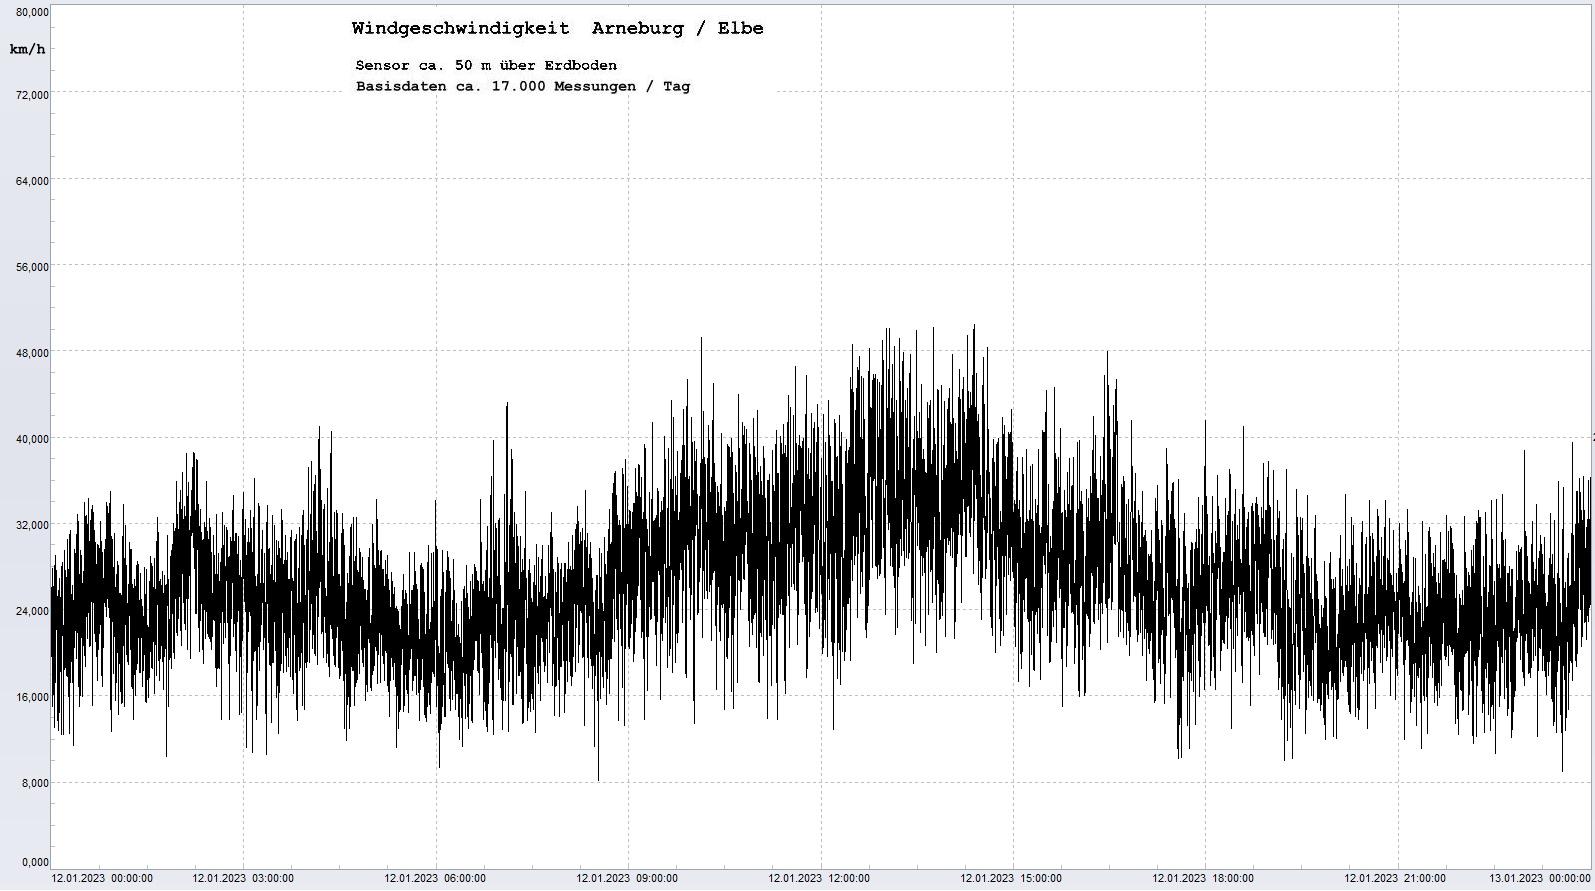 Arneburg Tages-Diagramm Winddaten, 12.01.2023
  Diagramm, Sensor auf Gebude, ca. 50 m ber Erdboden, Basis: 5s-Aufzeichnung